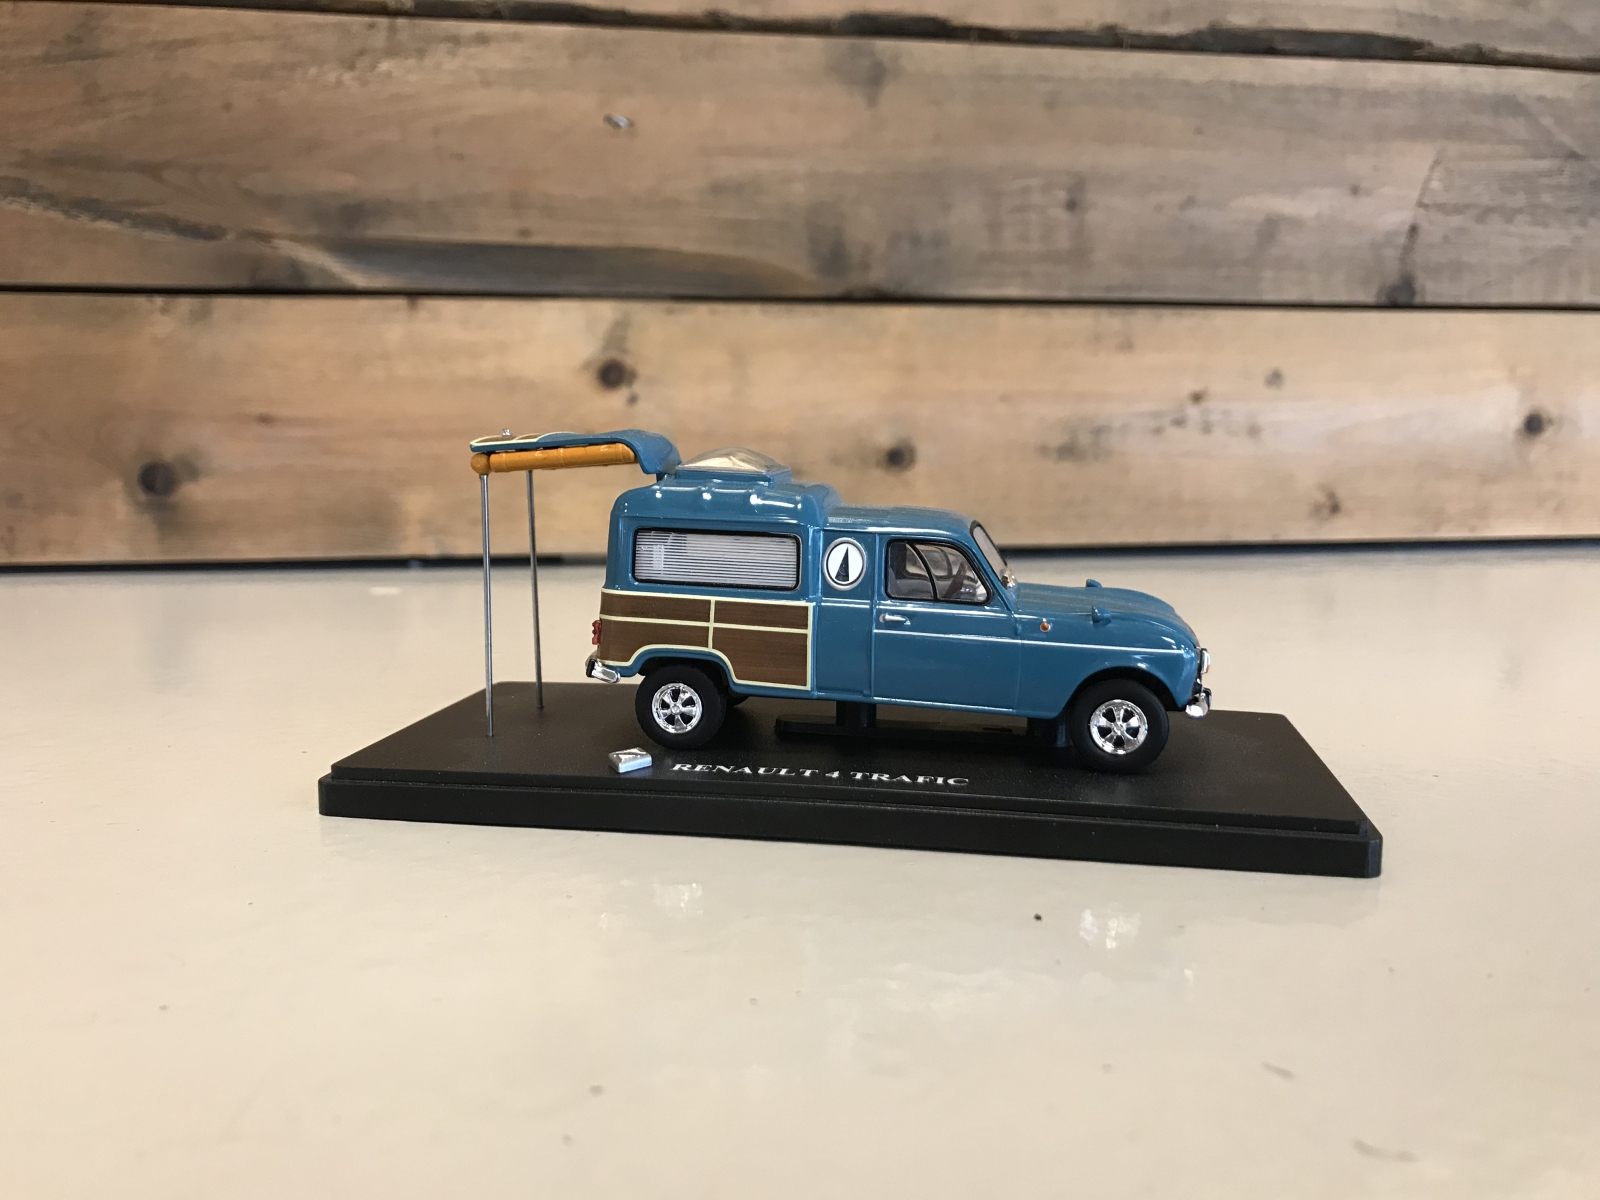 AutoRAI in Miniatuur: Renault 4 uit de film Trafic